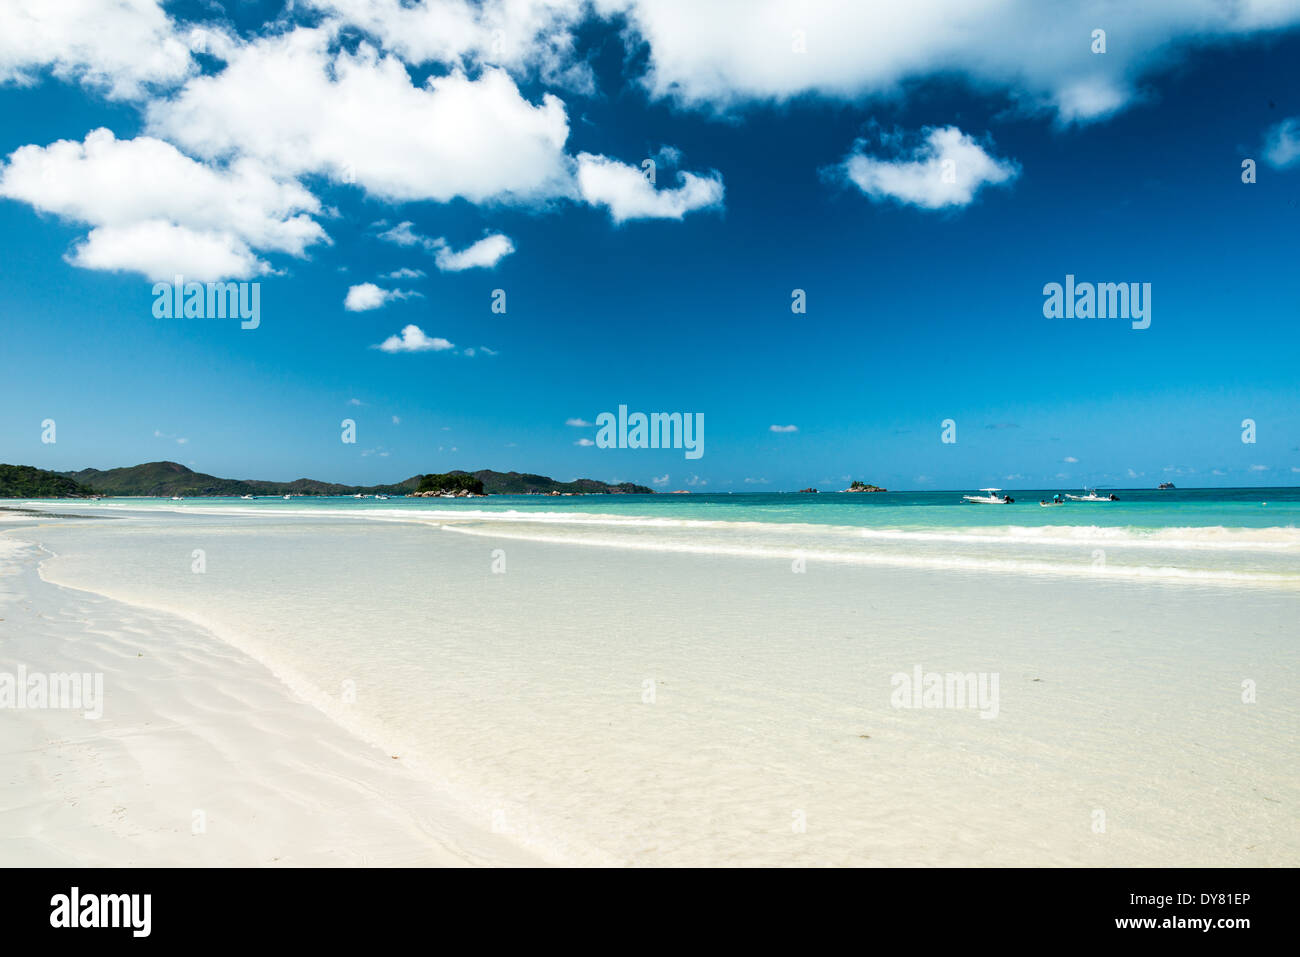 Plage de sable blanc avec une mer turquoise Banque D'Images